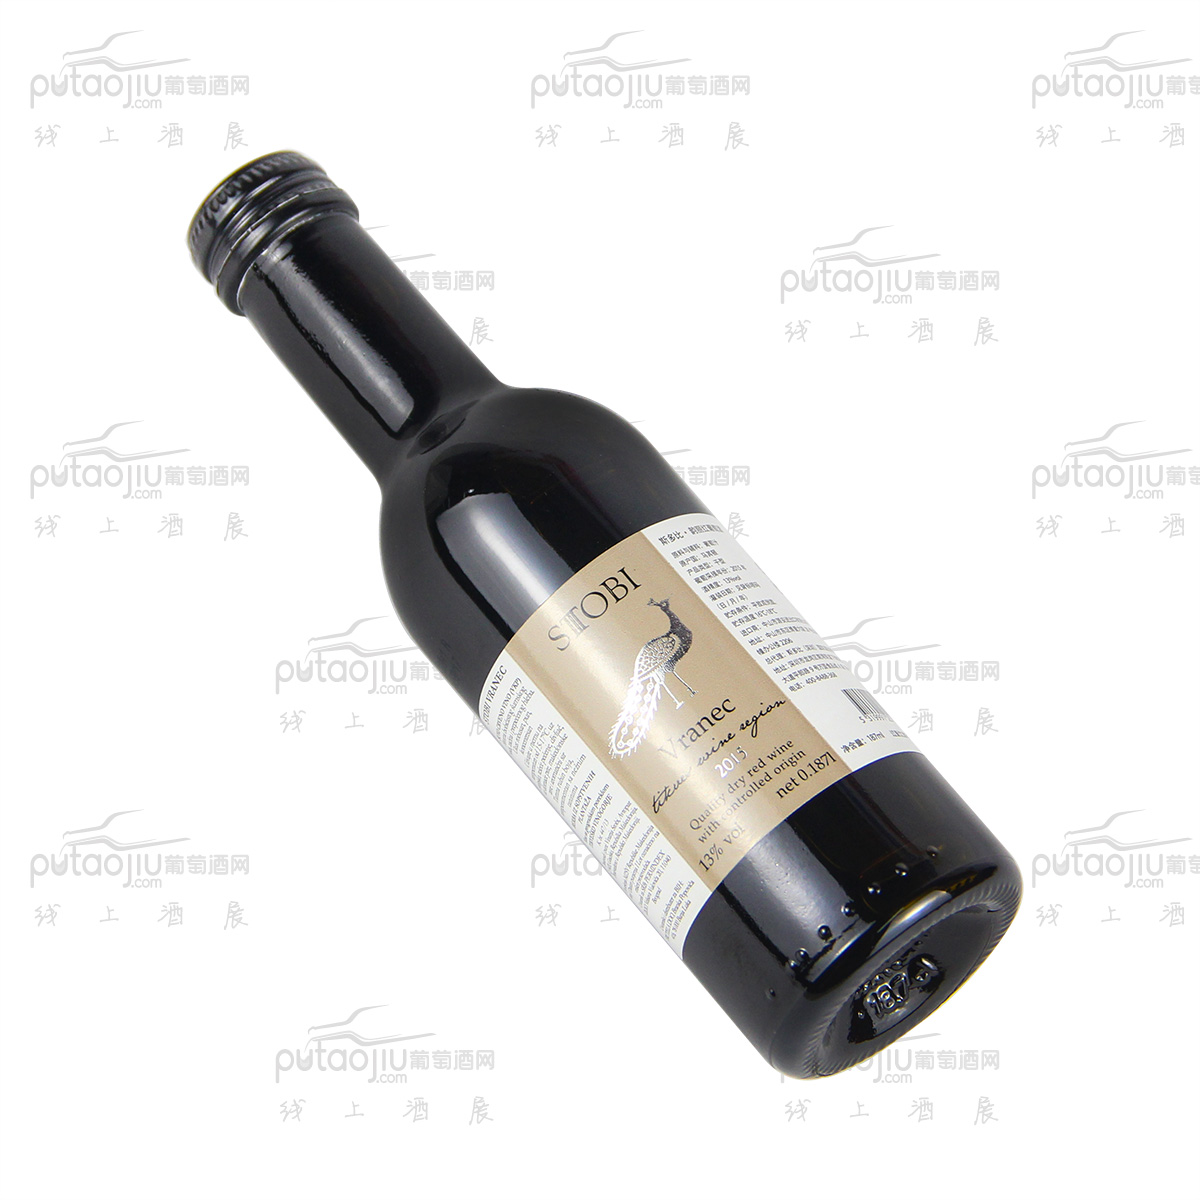 STOBI斯多比酒庄(Vranec)韵丽187ml A级干红葡萄酒小众国家原装进口北马其顿红酒